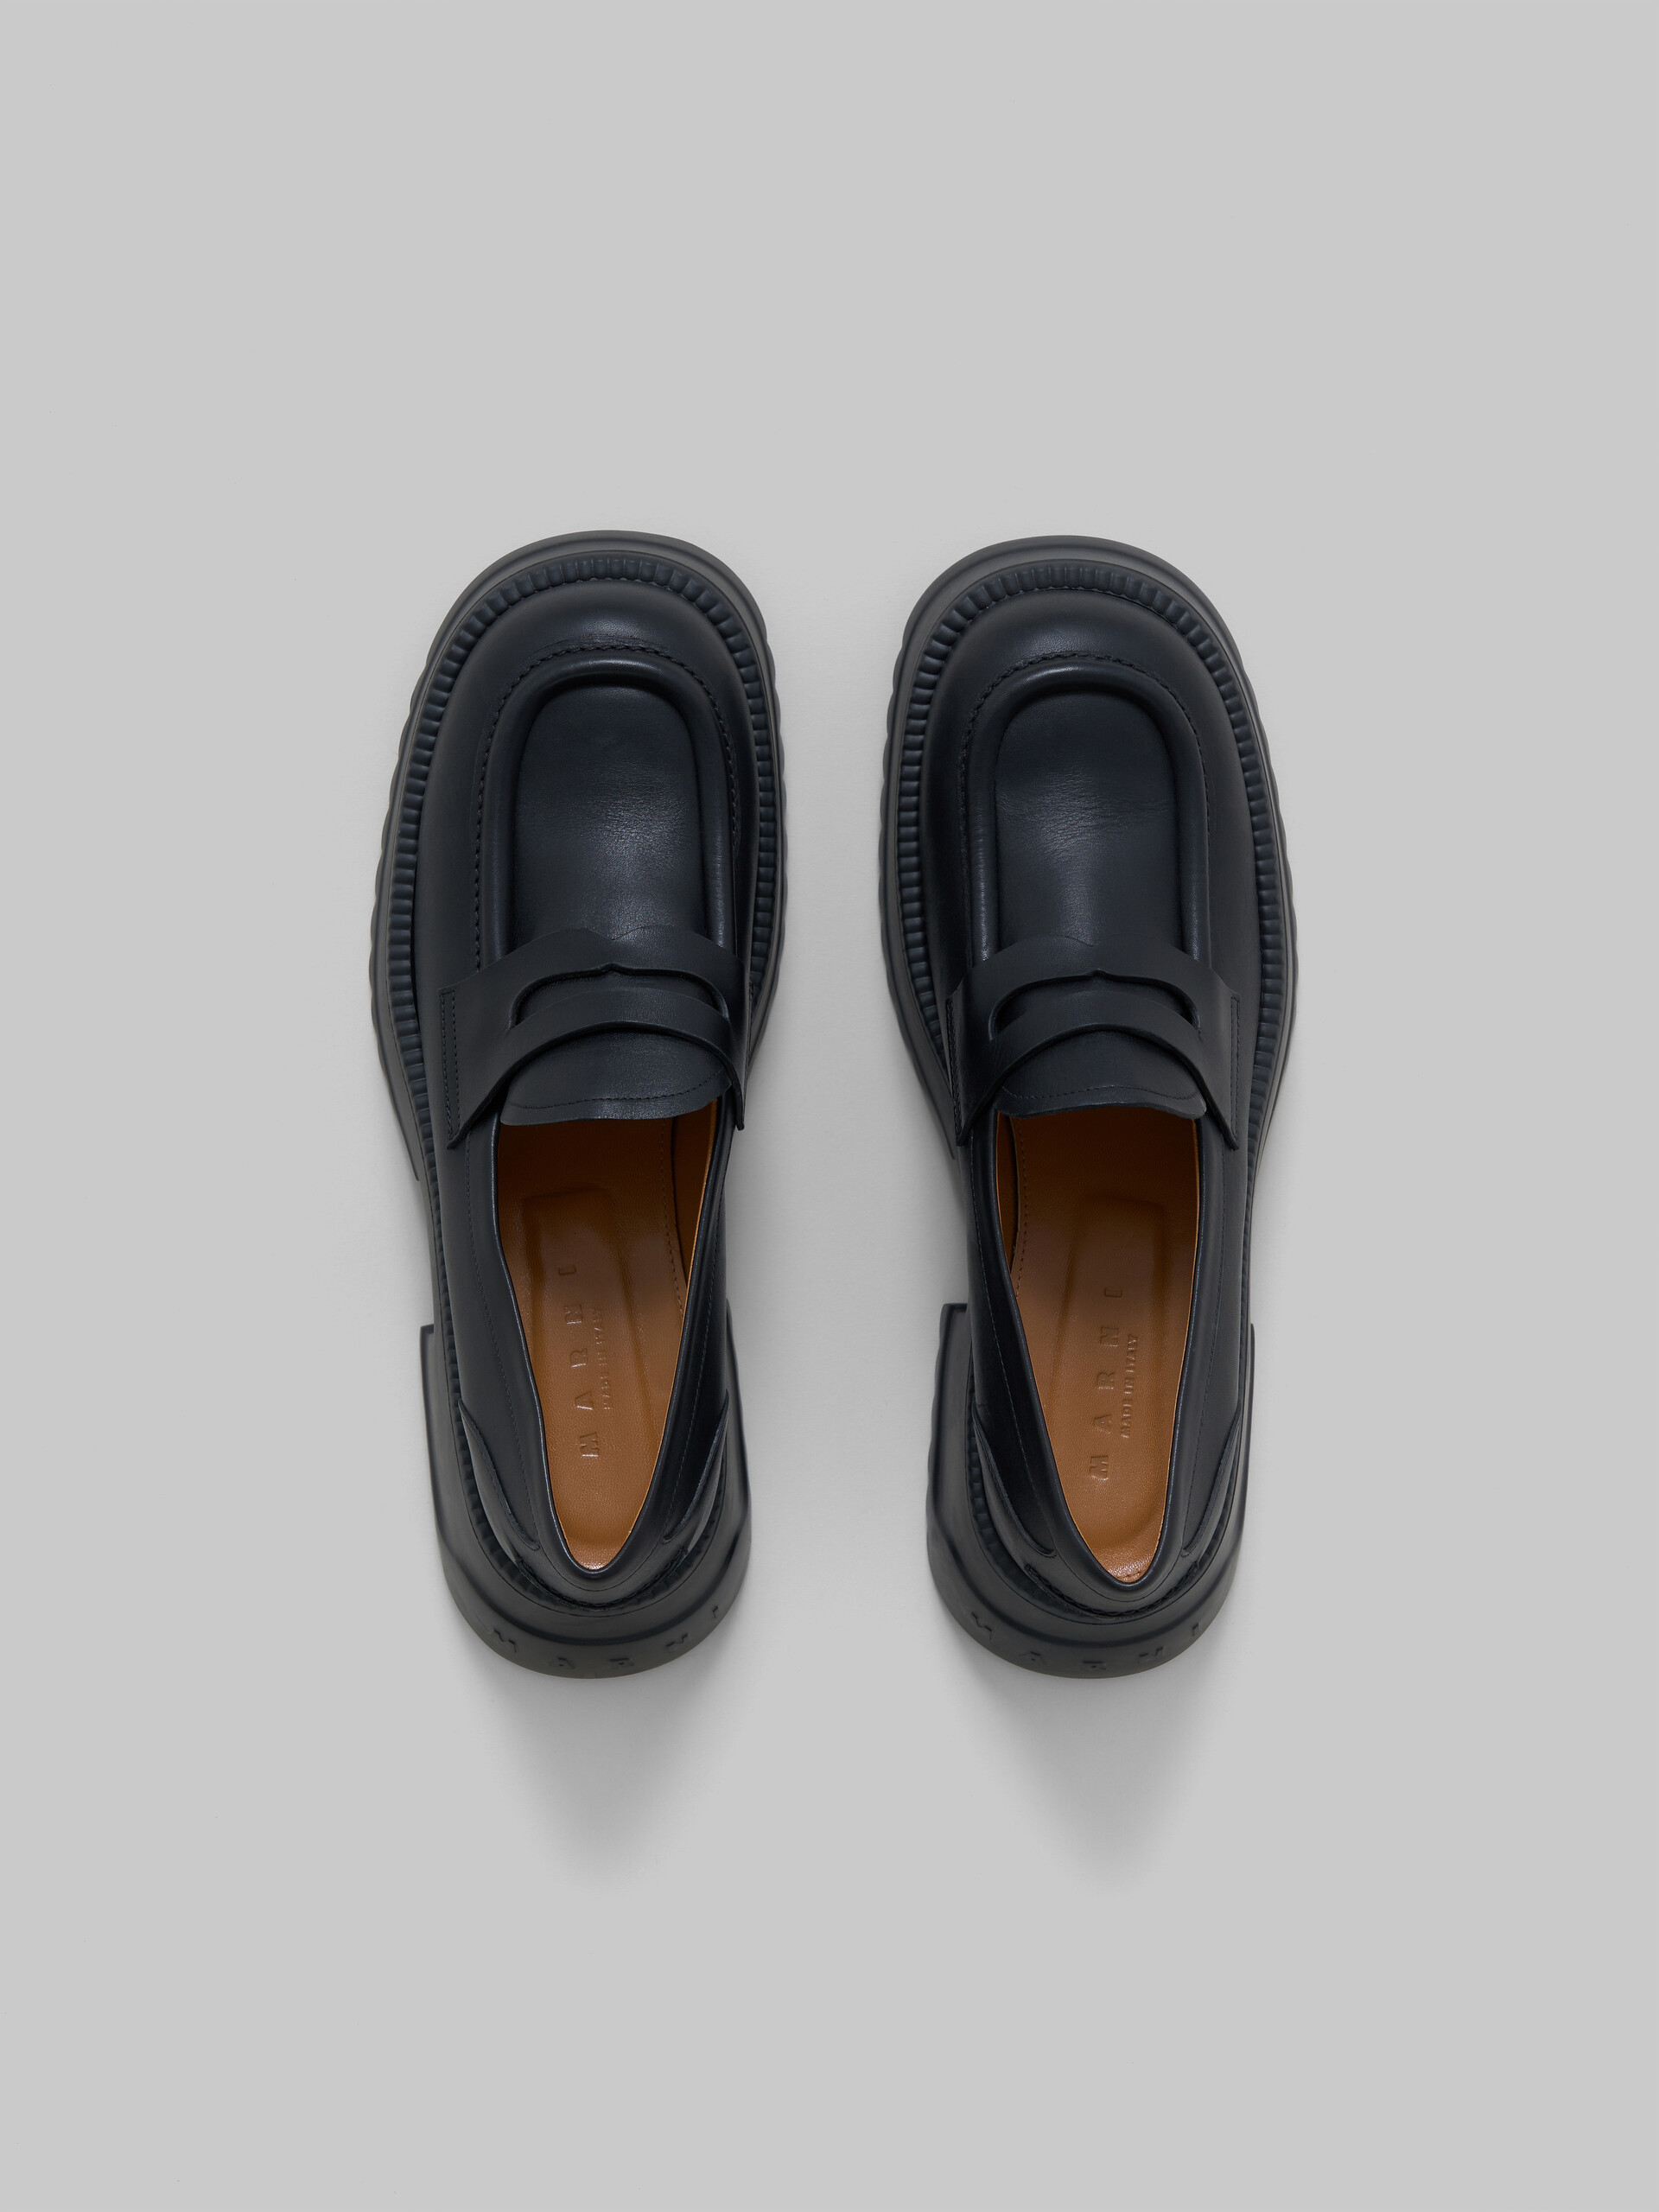 Black leather loafer with platform sole - Mocassin - Image 4